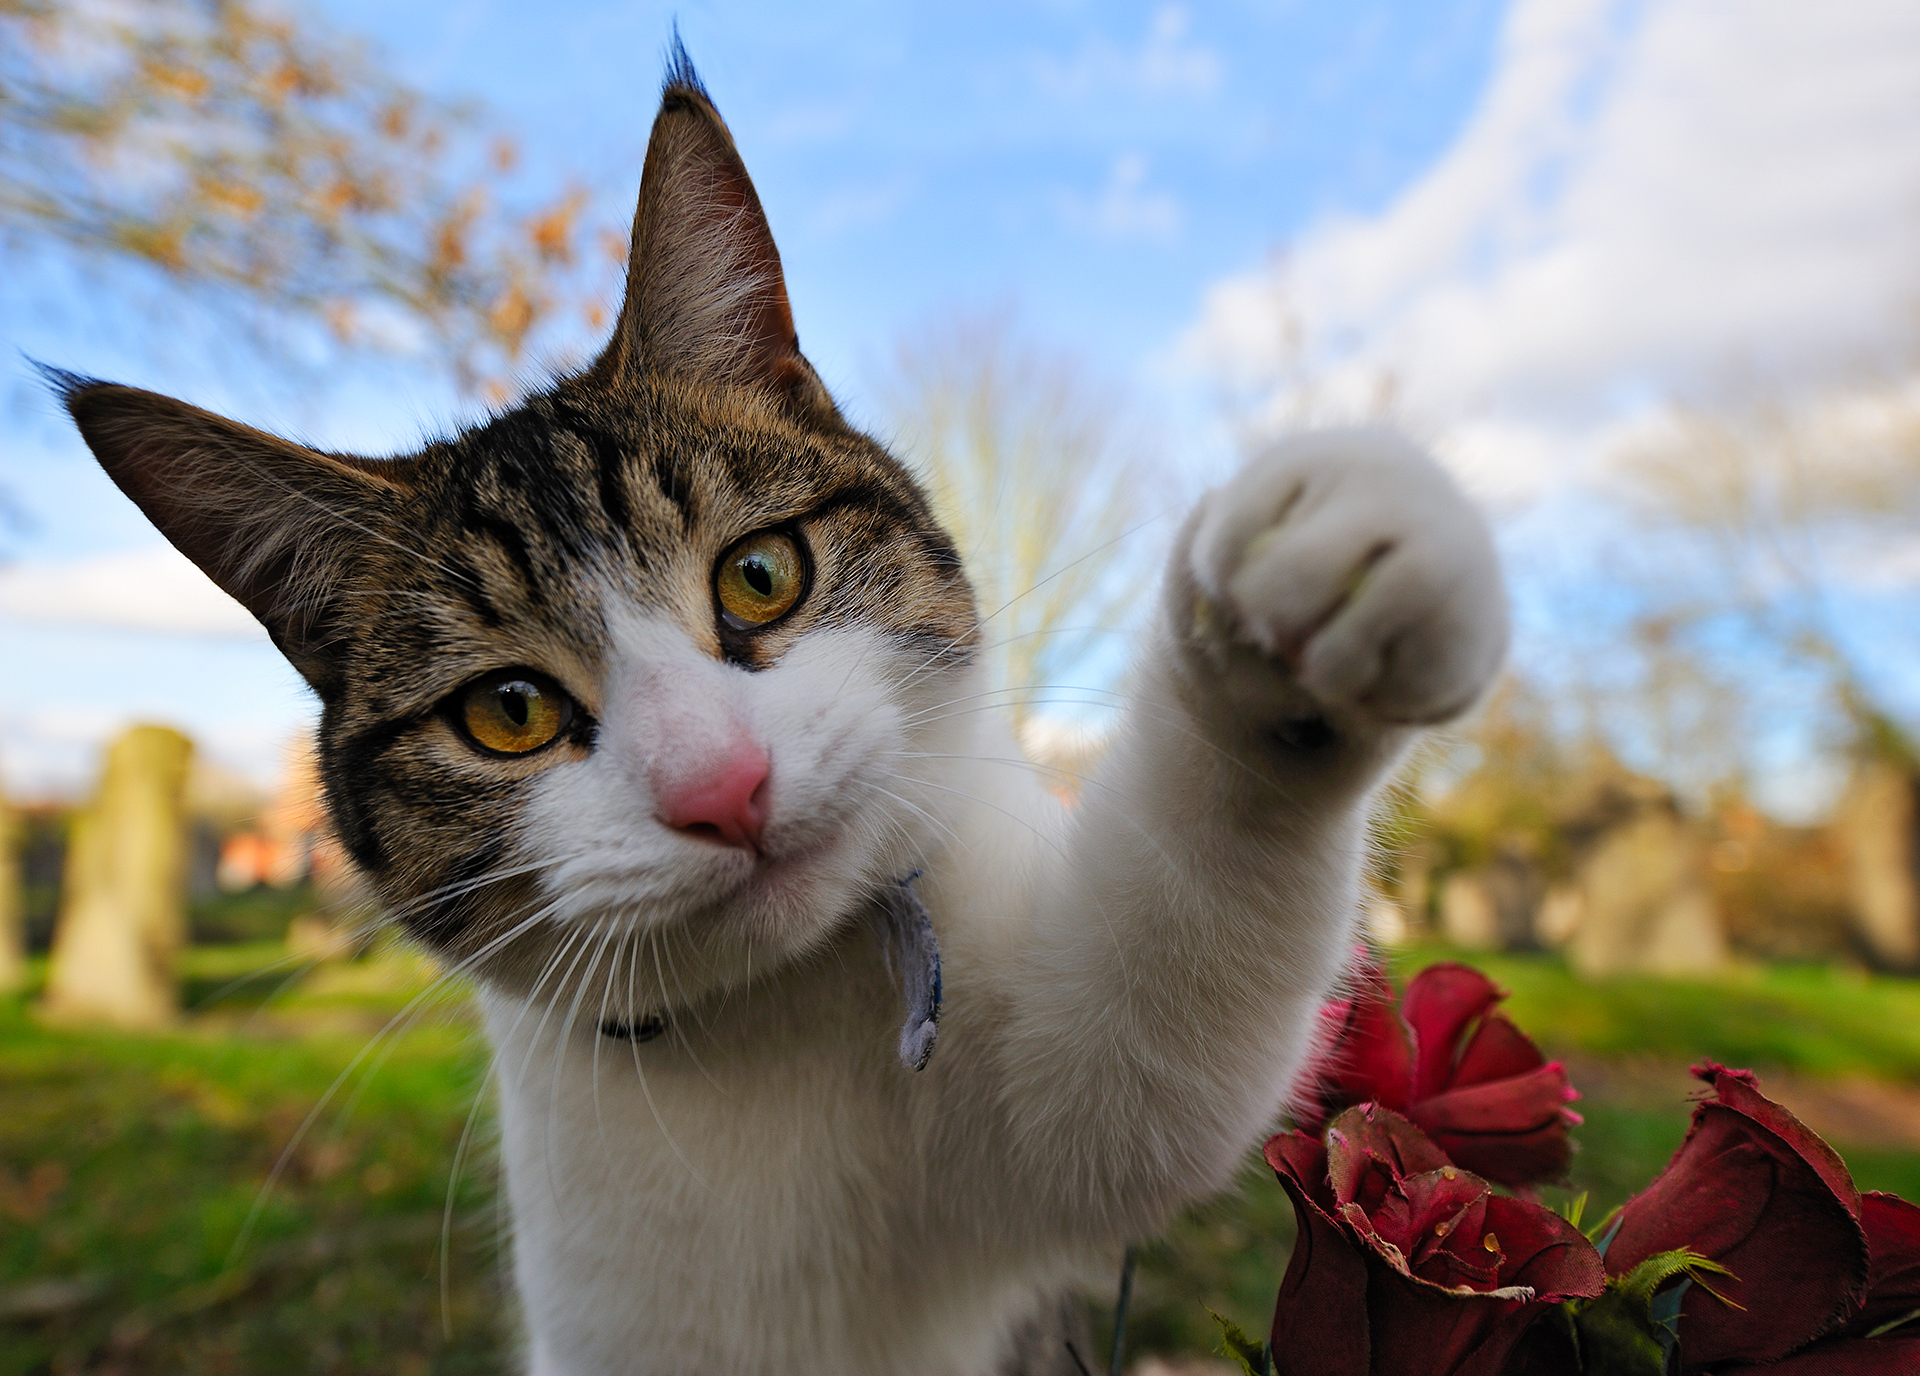 Cuando el gato no está cómodo lo demostrará emitiendo señales a través de su cuerpo como el mover la puntita de la cola, rotar las orejas, o fruncir el ceño (Getty Images)